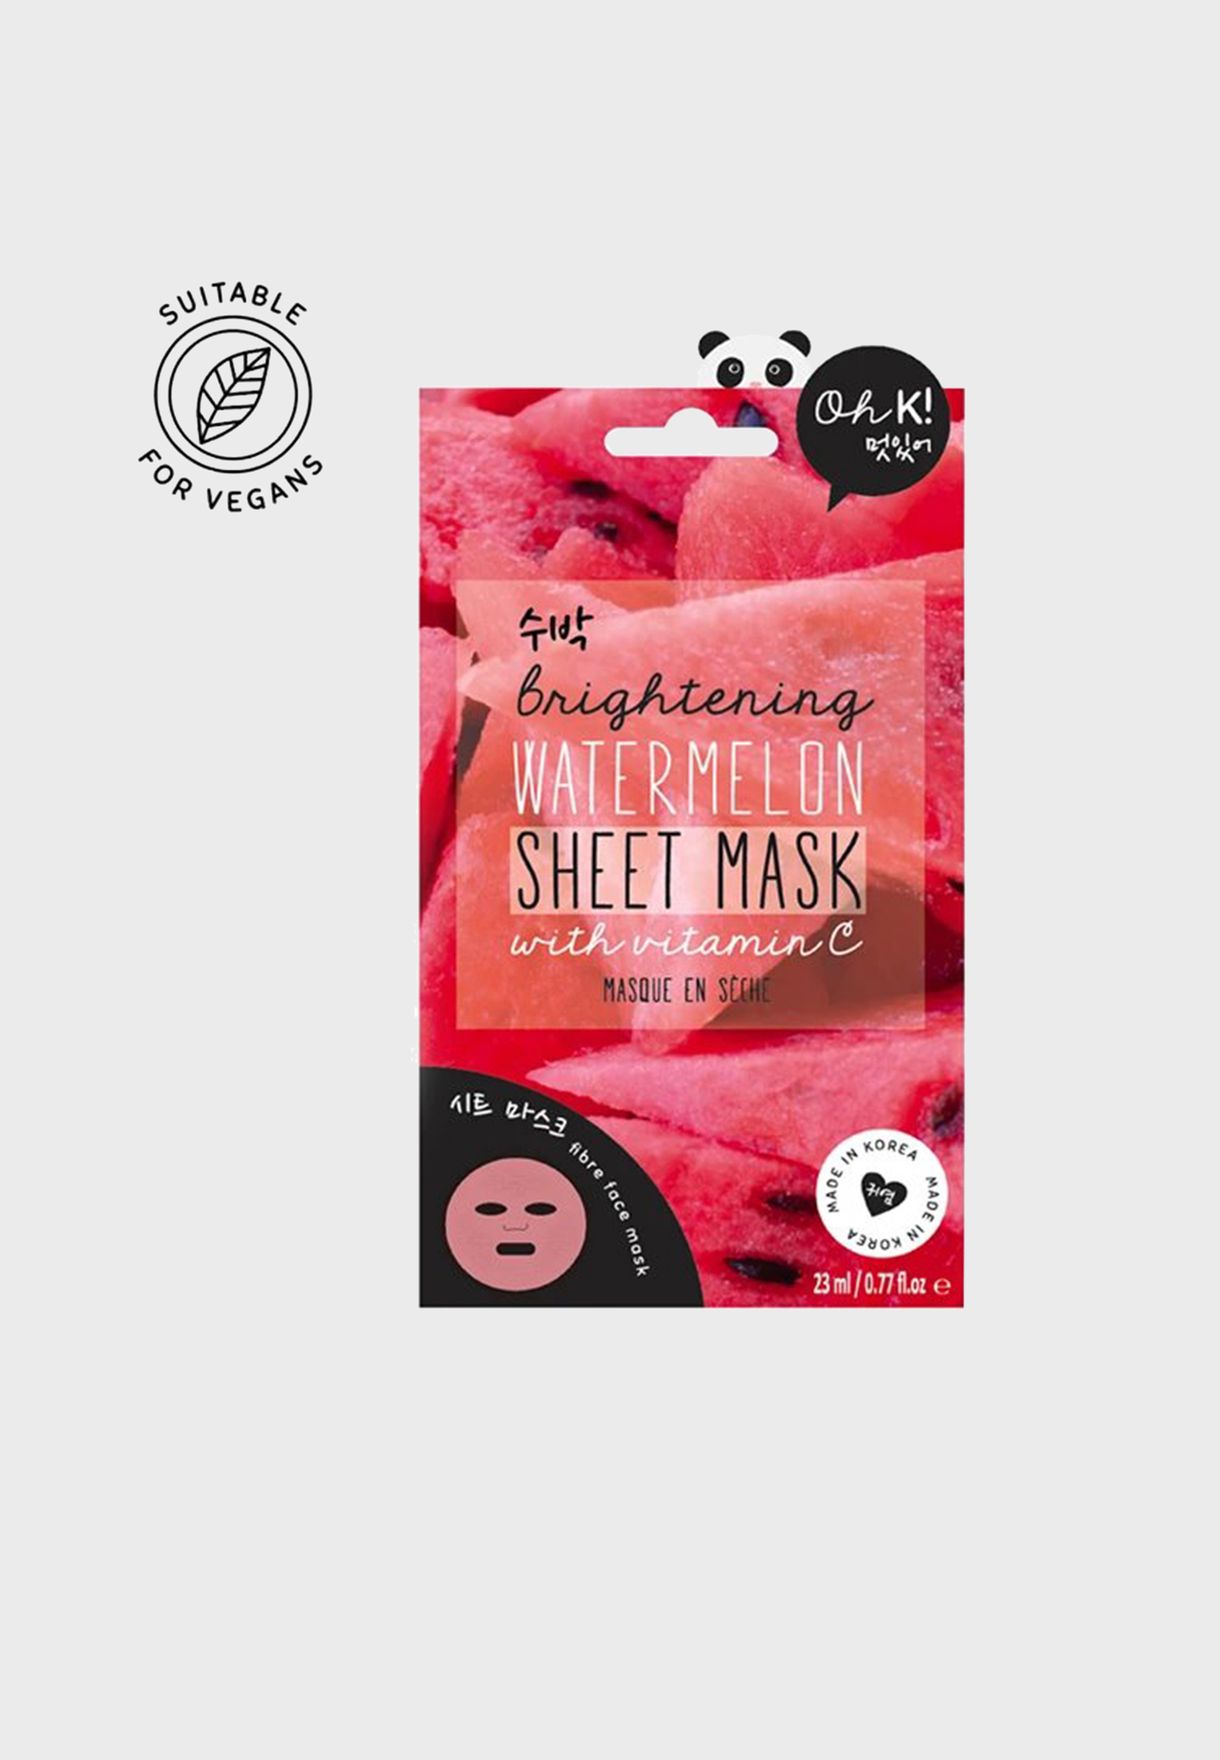 Vitamin C Watermelon Sheet Mask